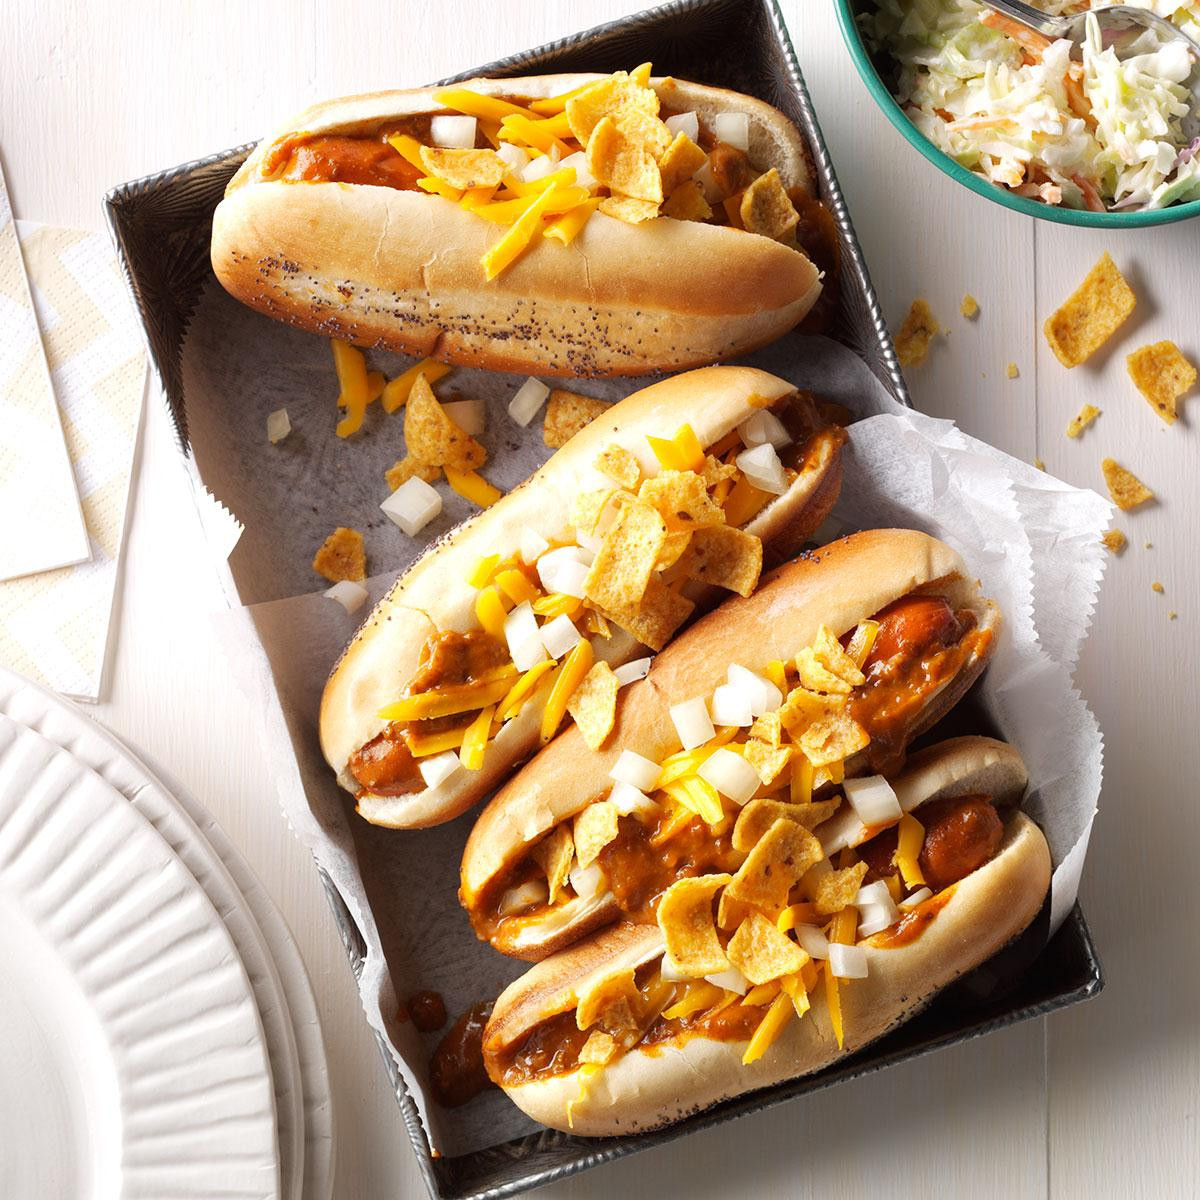 Hotdog Recipes For Kids
 Bandito Chili Dogs Recipe